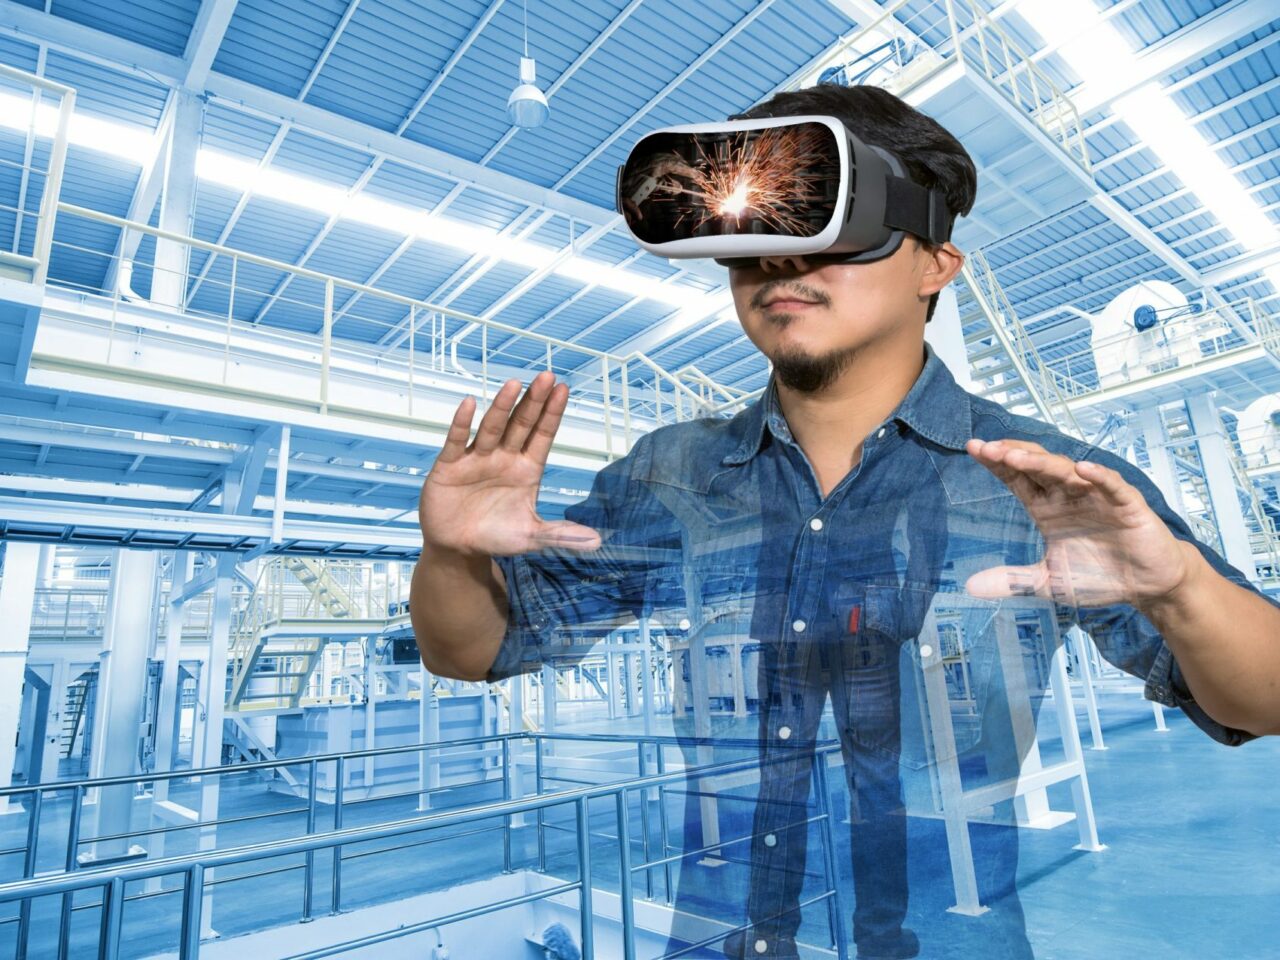 Doppelbelichtung eines asiatischen Mannes, der eine Virtual-Reality-Brille trägt, über der Fabrikausrüstung innerhalb einer industriellen Förderbandlinie, die Pakete transportiert. VR-Konzept.